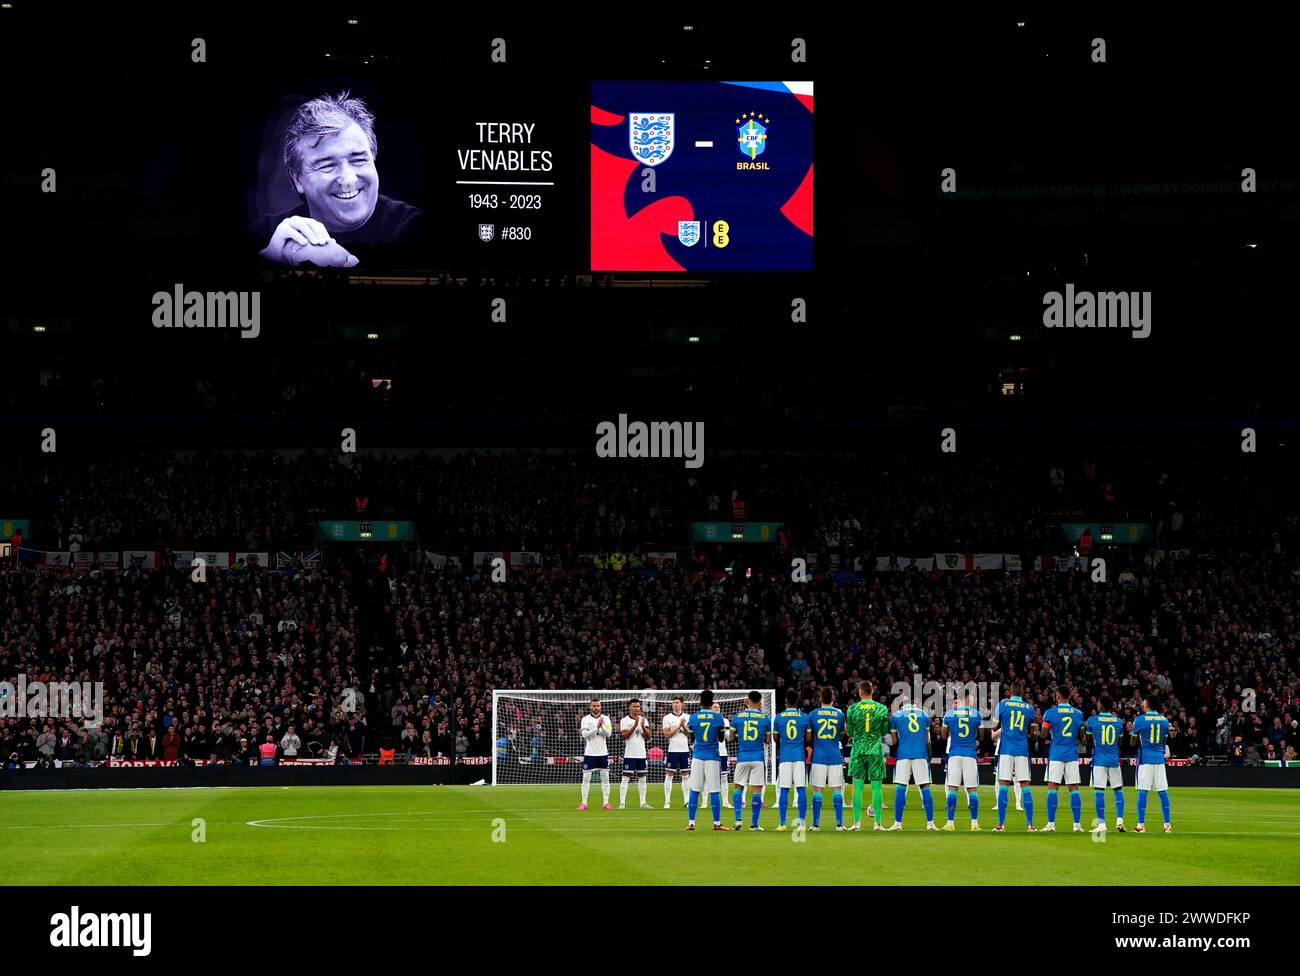 Spieler und Fans nehmen an einer Minute Applaus zum Gedenken an den ehemaligen englischen Trainer Terry Venables Teil, bevor sie ein internationales Freundschaftsspiel im Wembley Stadium in London antreten. Bilddatum: Samstag, 23. März 2024. Stockfoto